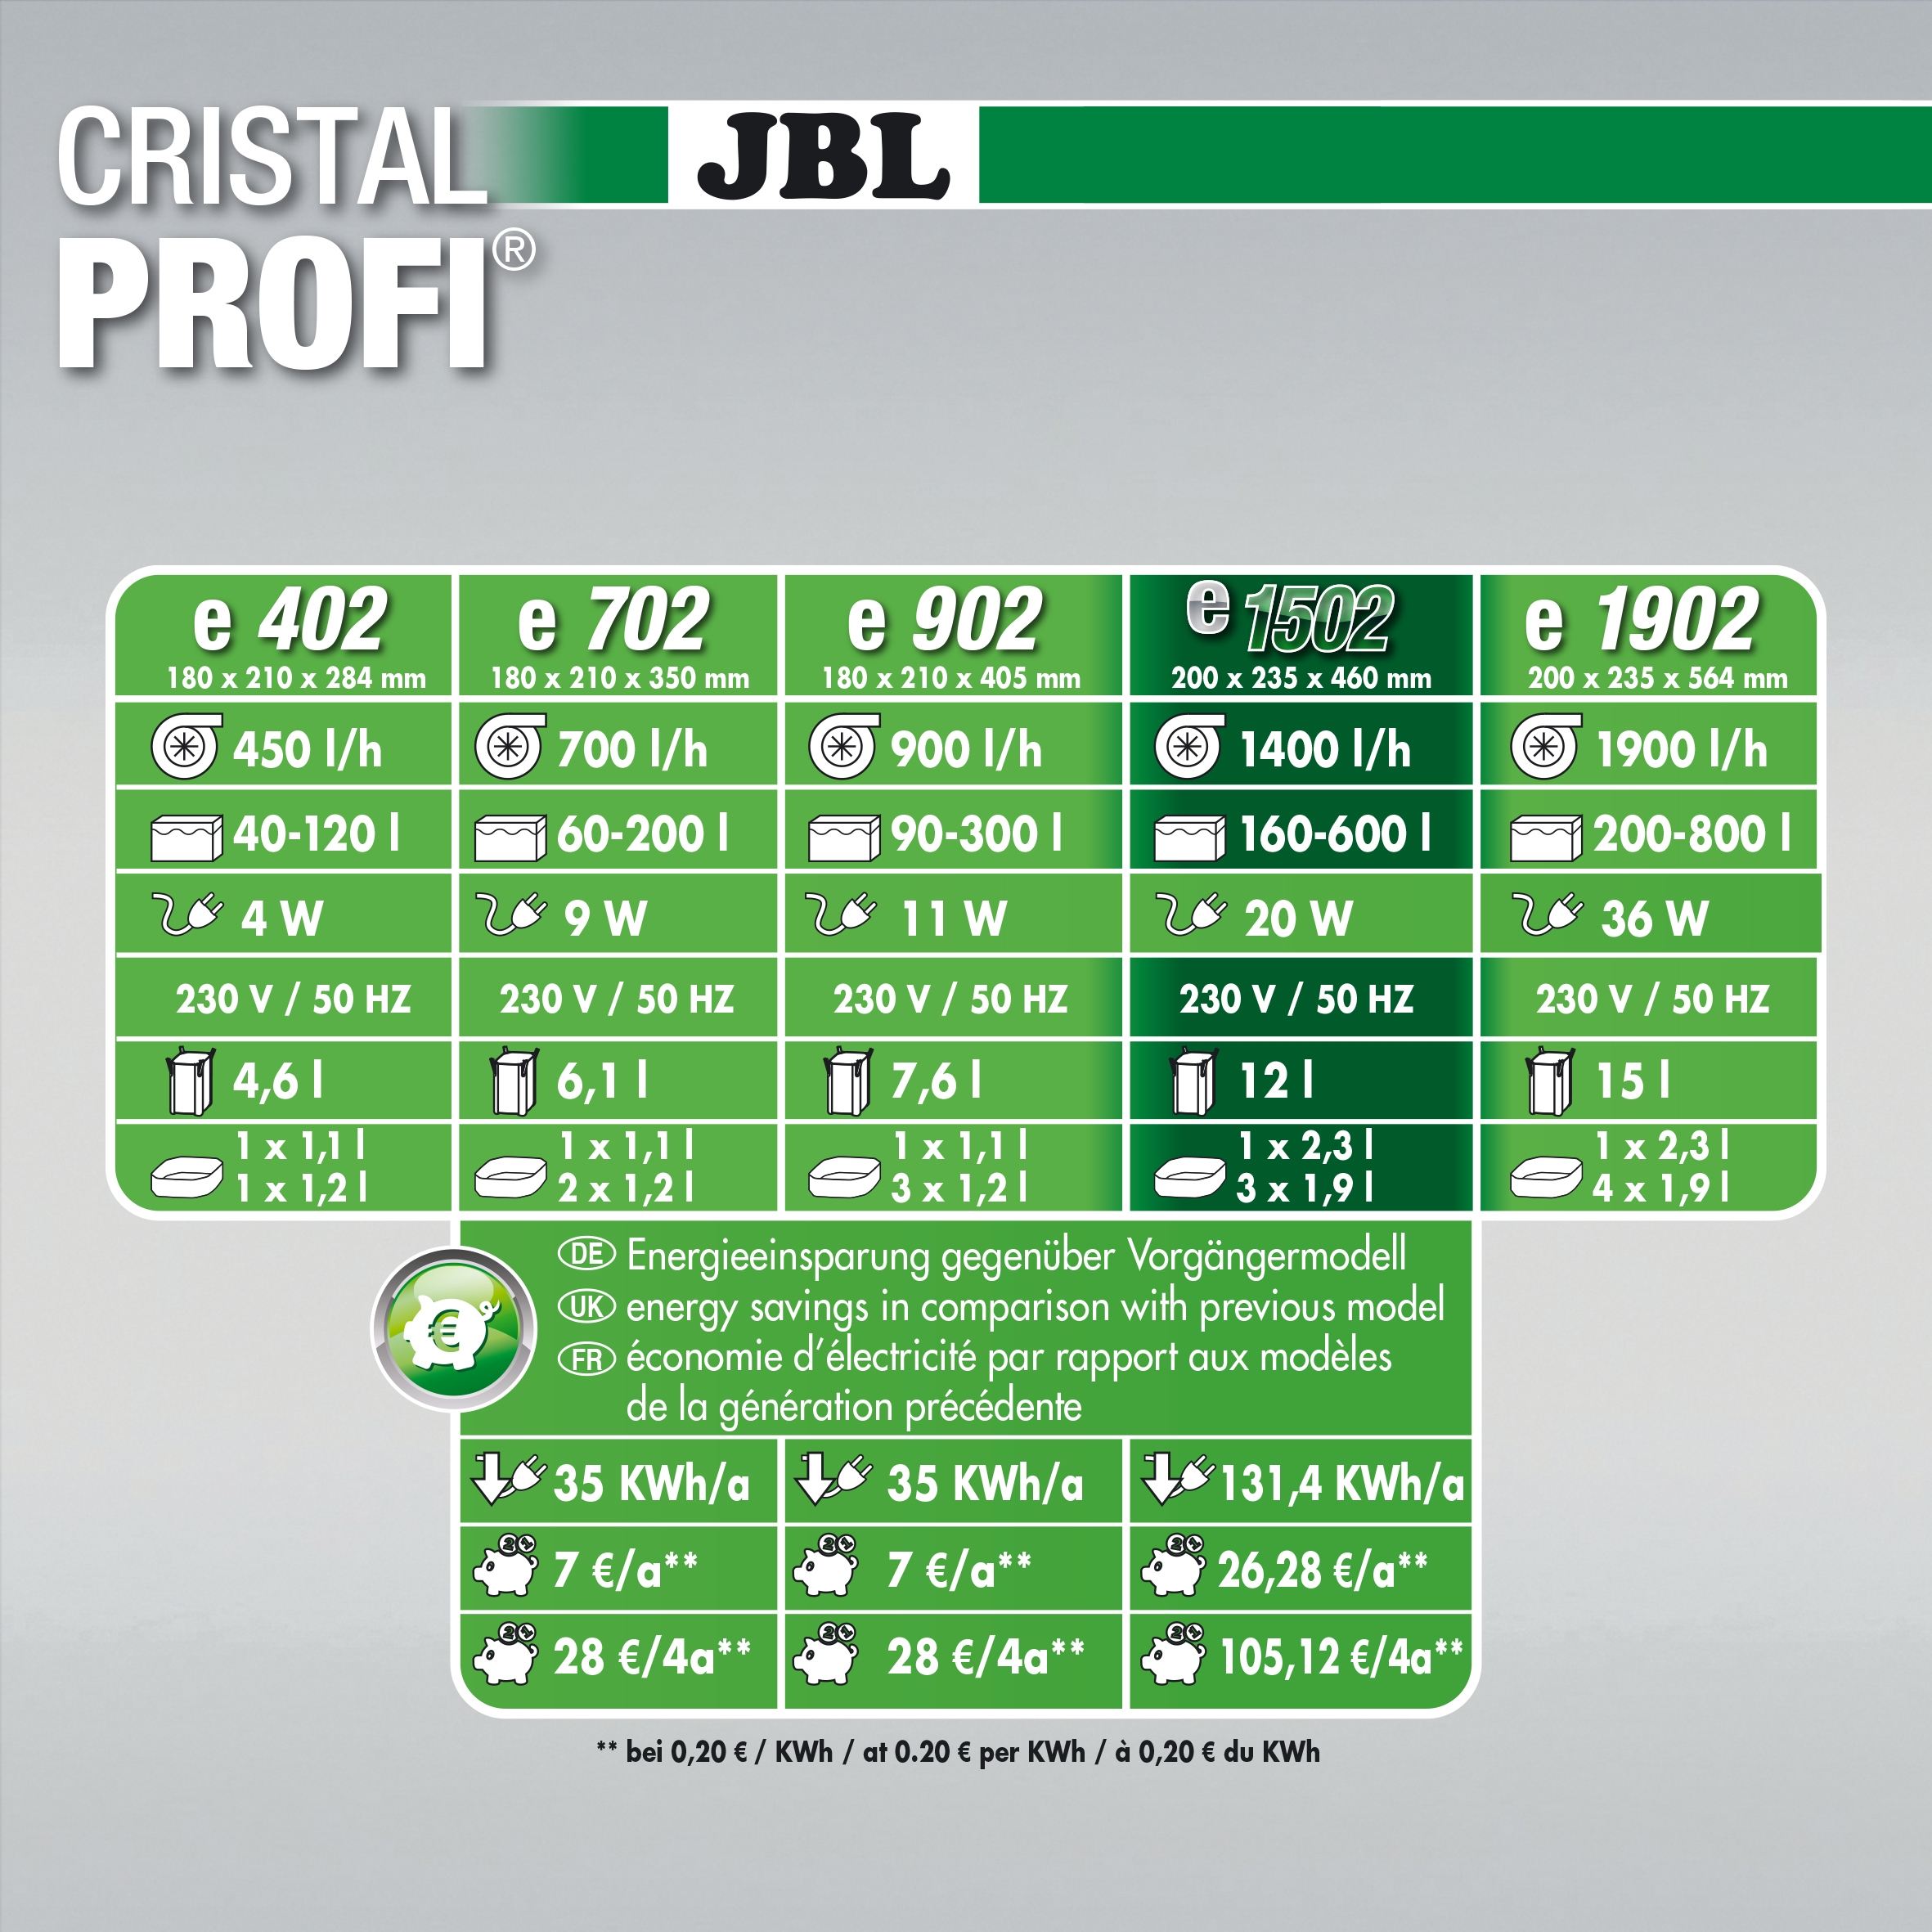 JBL Cristal Profi e 1502 Greenline